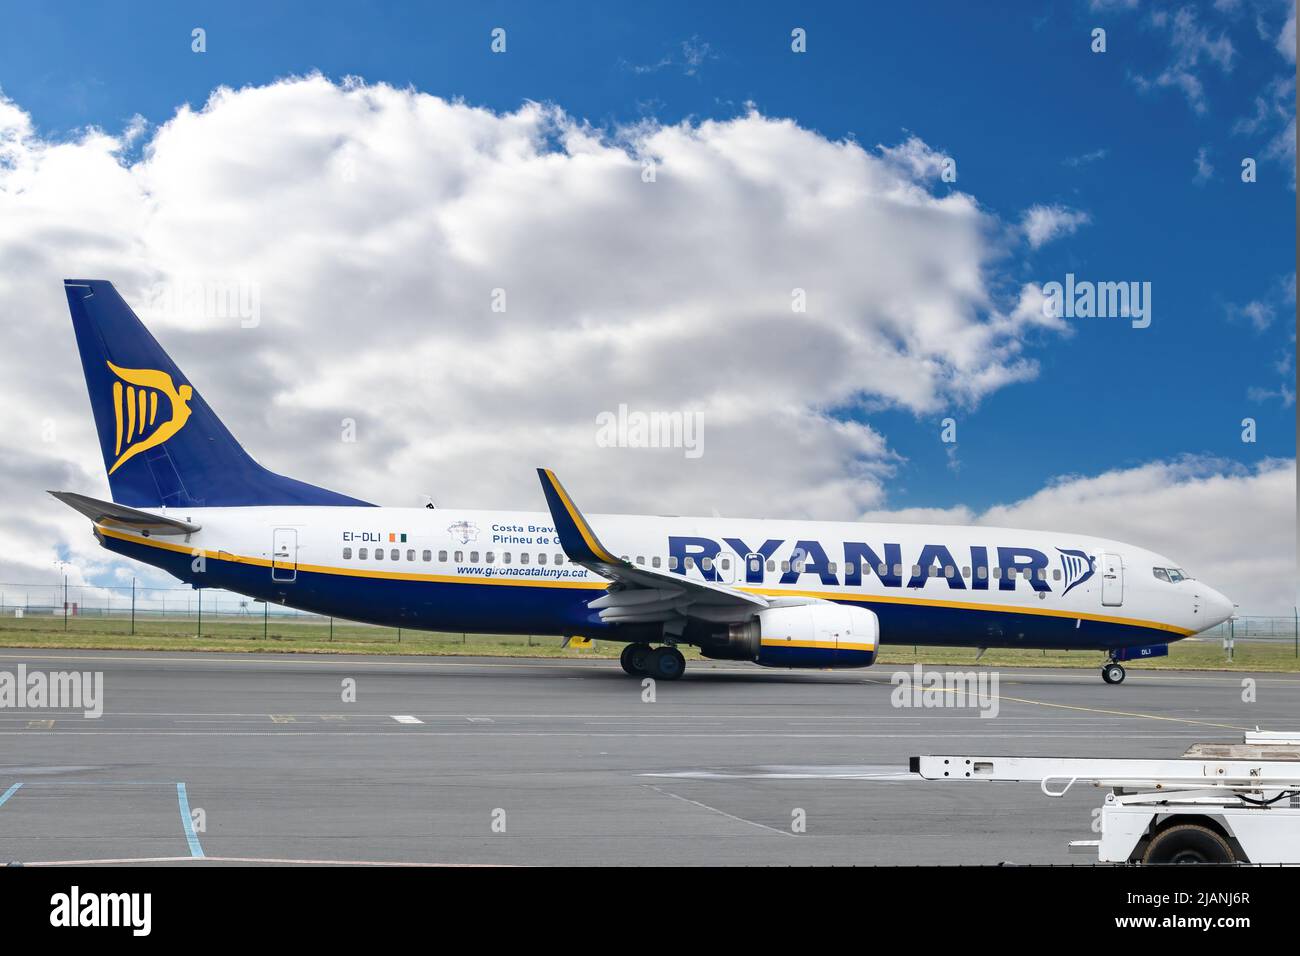 Paris, France - 19 mars 2018: Boeing 737 NG / Max - MSN 33591 - EI-Dli de Ryanair, compagnie aérienne de l'aéroport de Paris - Charles de Gaulle Banque D'Images